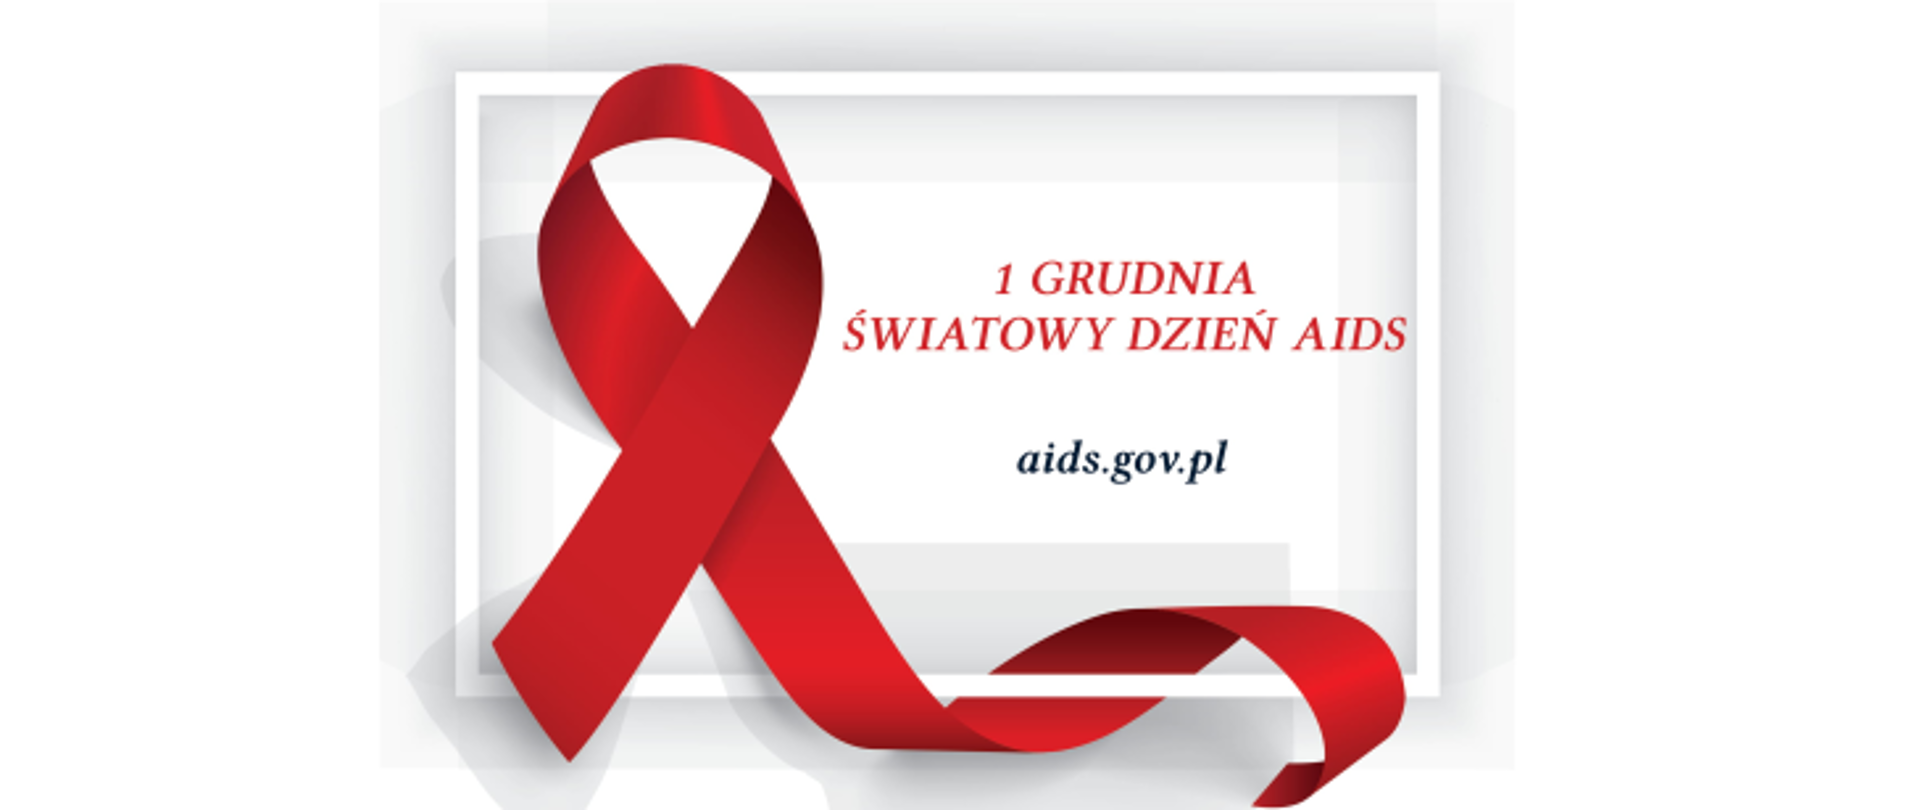 Czerwona wstążka obok napis 1 GRUDNIA ŚWIATOWY DZIEŃ AIDS